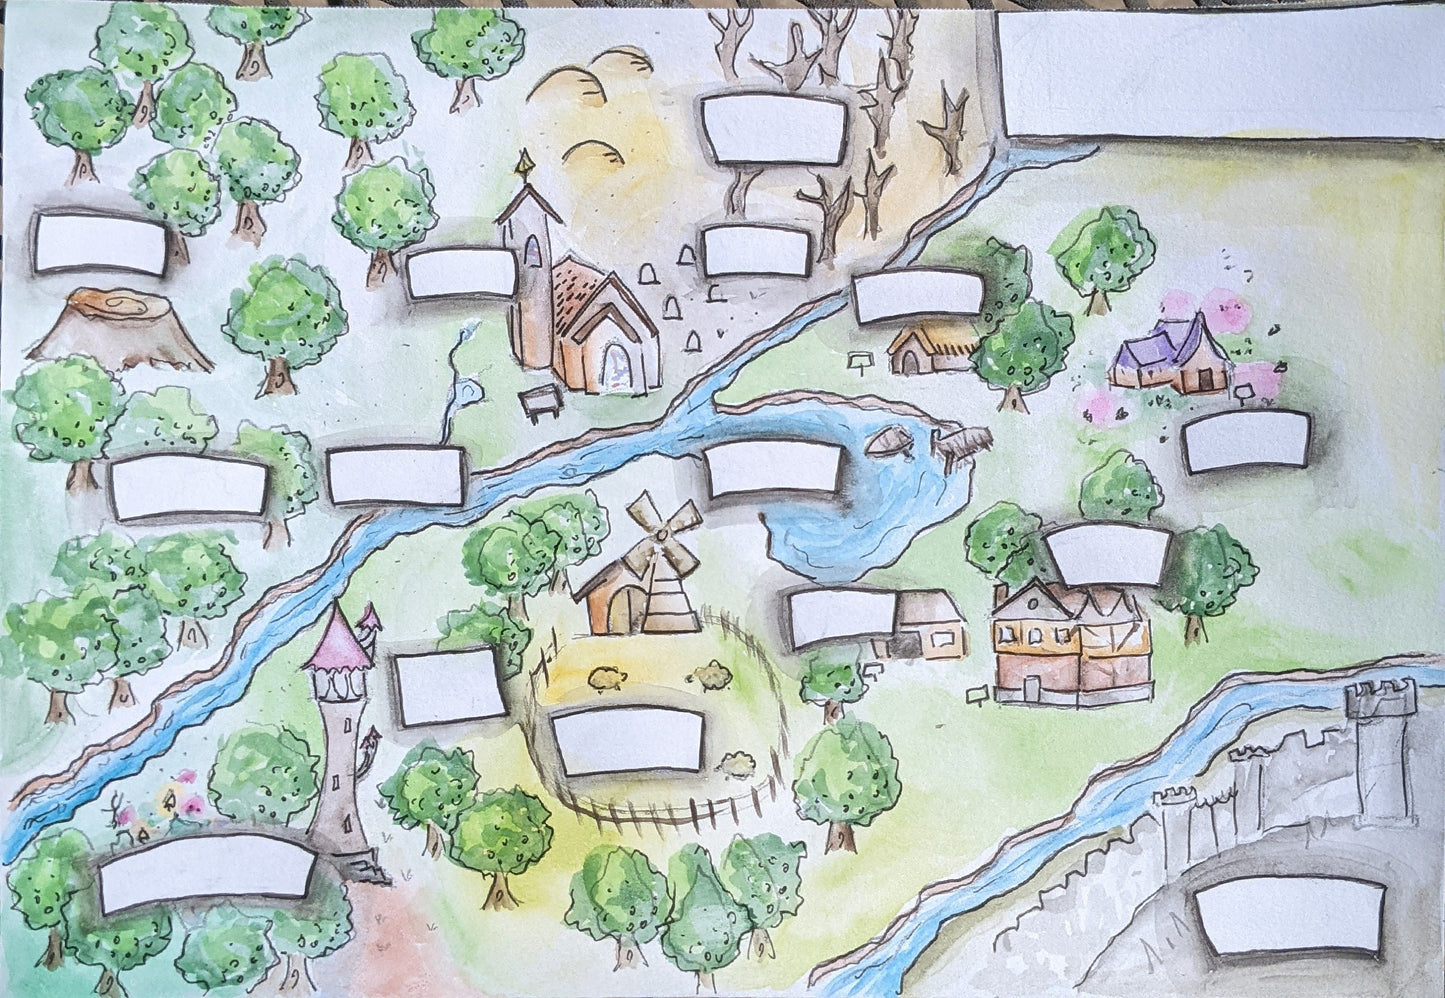 Custom Watercolor Painted Fantasy Map - Original Hand Painted Fantasy Map for Dungeons & Dragons | Pathfinder | Tabletop RPG